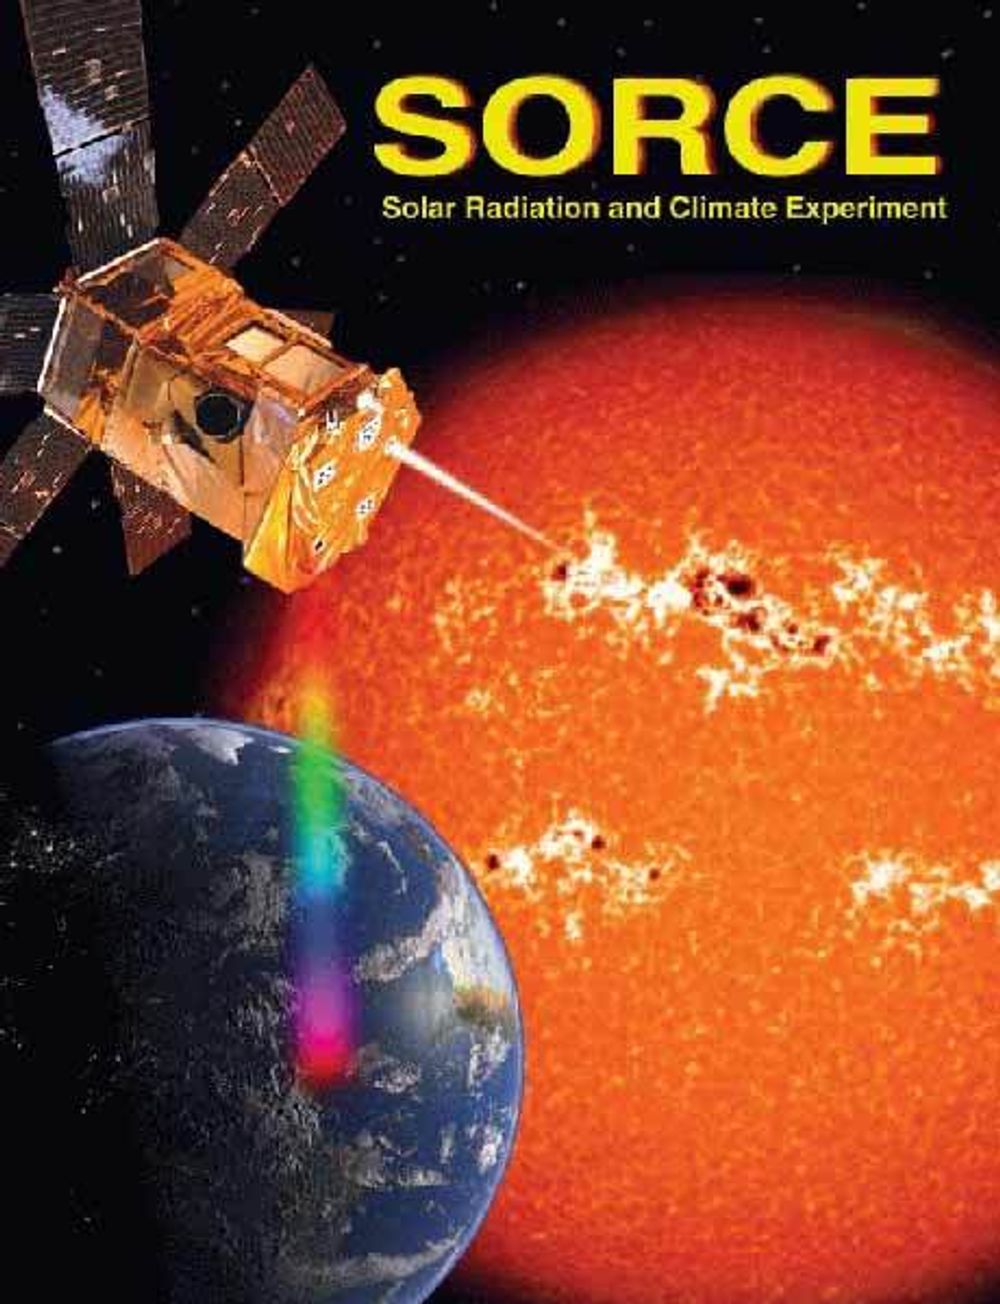 SORCE-satellitten begynte sine observasjoner i januar 2003. Sammen med andre observasjoner, kan forskerne finne mye mer informasjon om solas påvirkning av klimaet på jorda. Ill: NASA/ESA